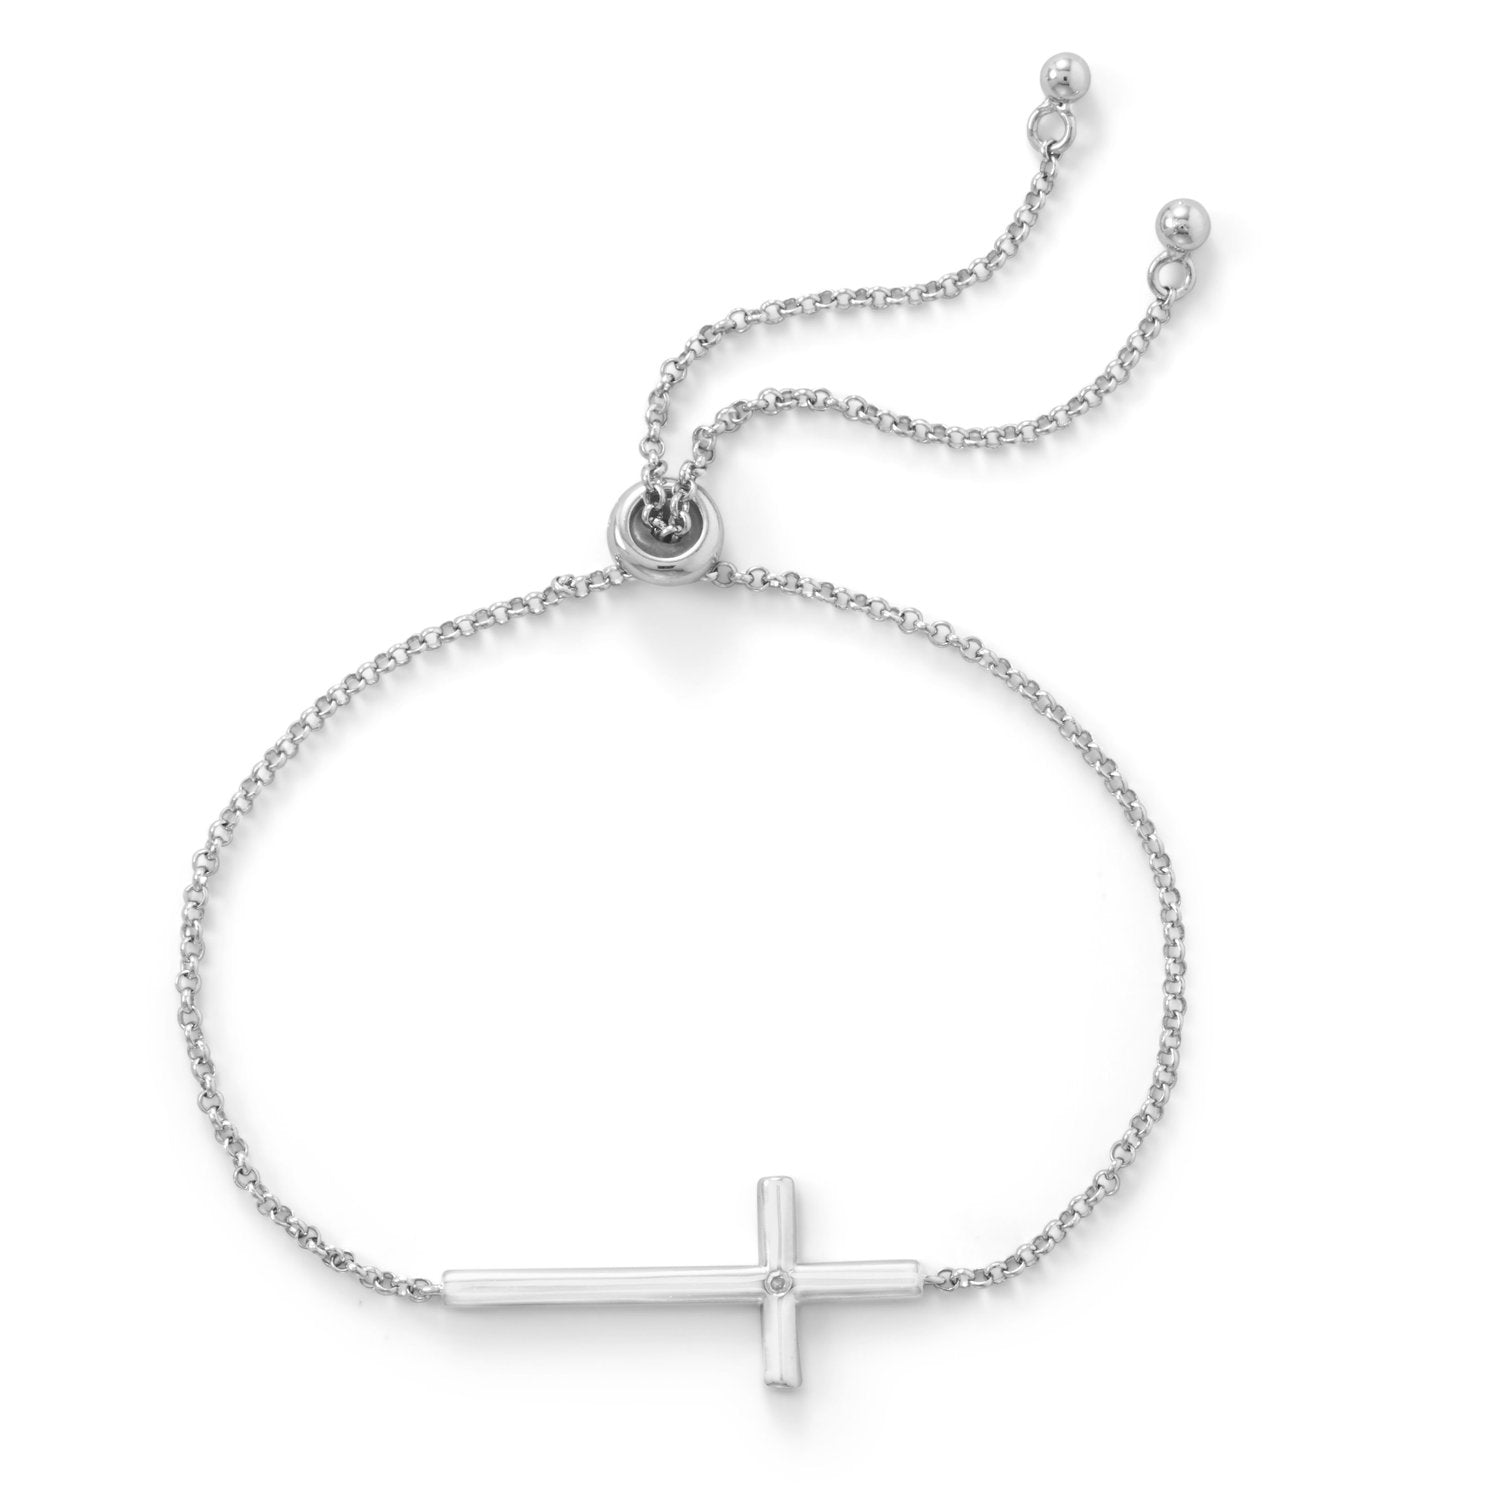 Rhodium Plated Sideways Cross Bolo Bracelet with Diamond - Joyeria Lady